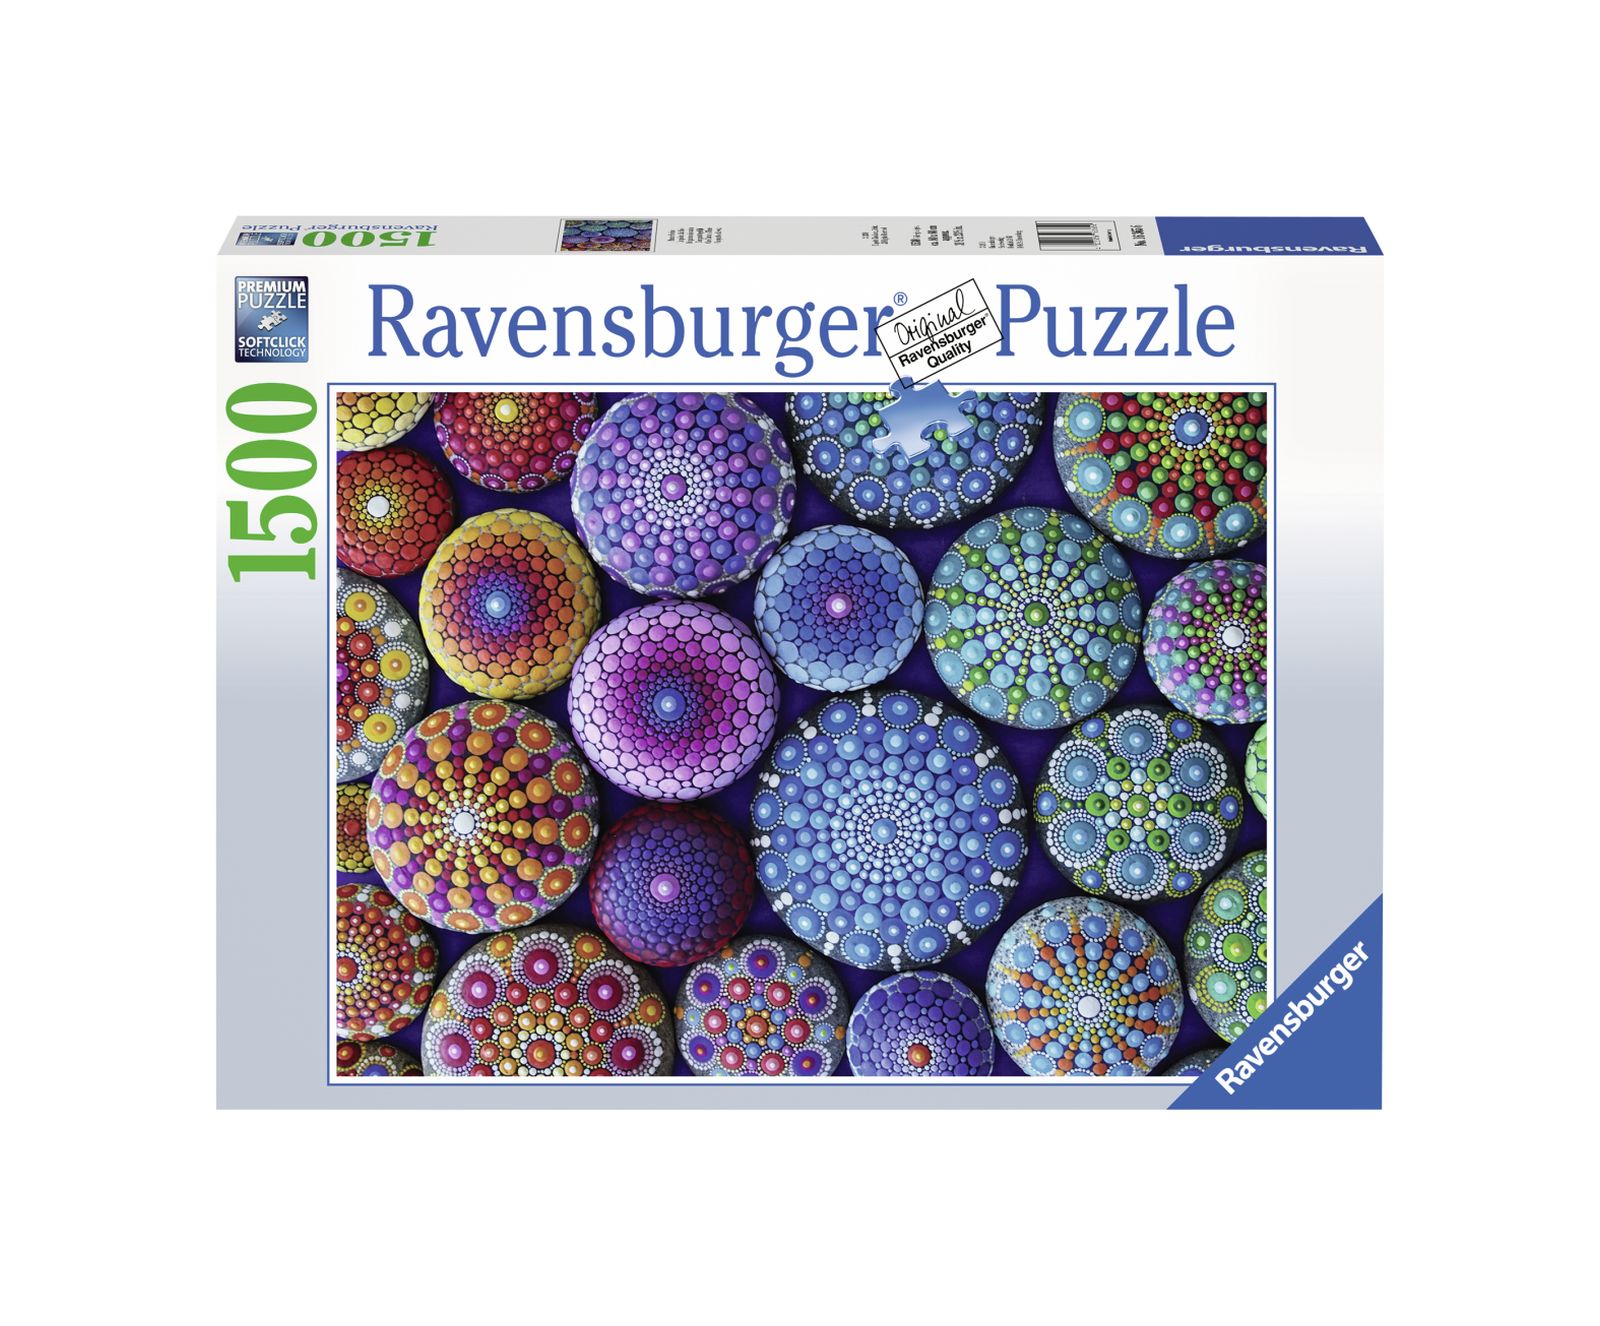 Ravensburger puzzle 1500 pezzi - ricci di mare - RAVENSBURGER